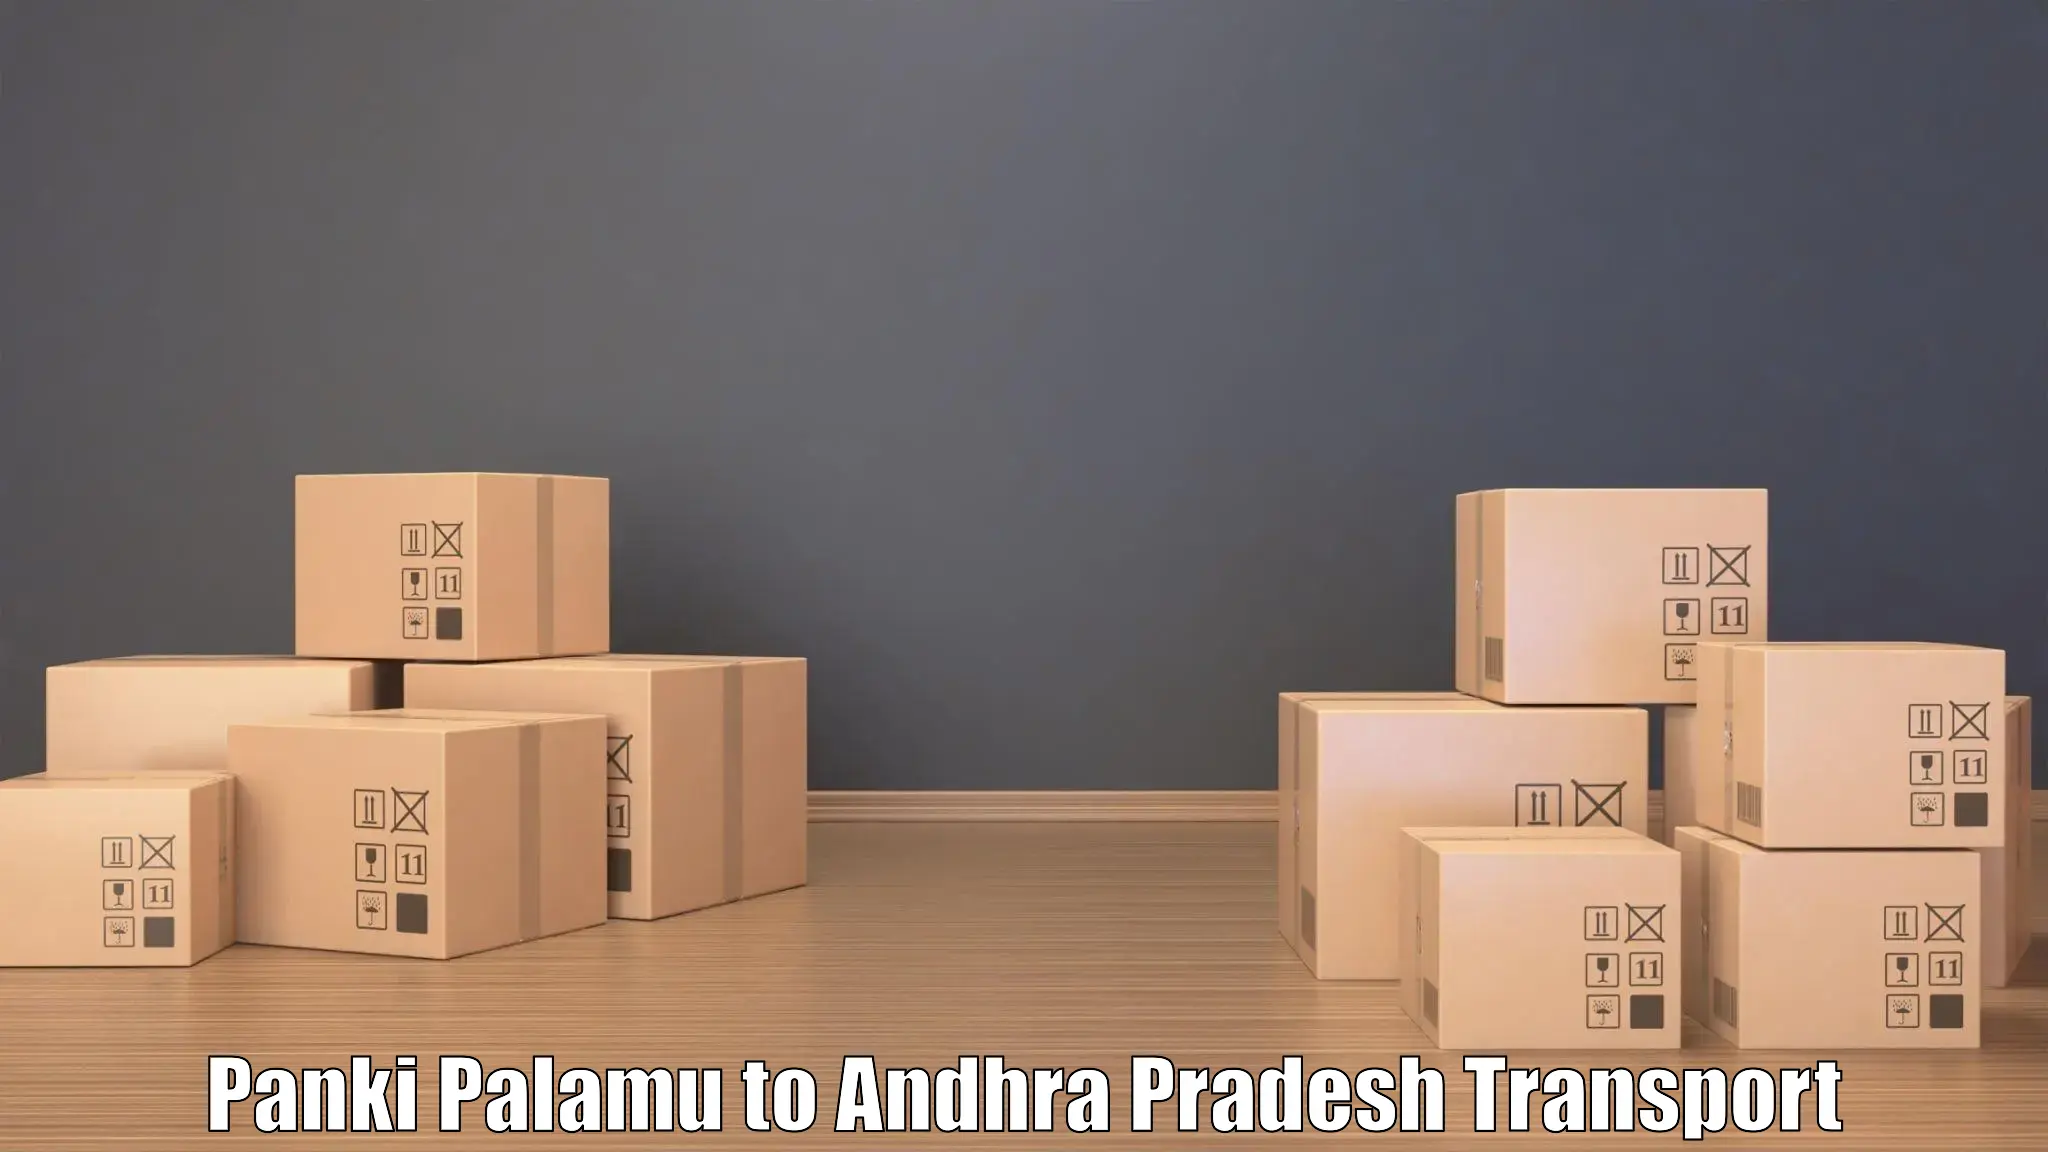 Commercial transport service Panki Palamu to Mulakalacheruvu